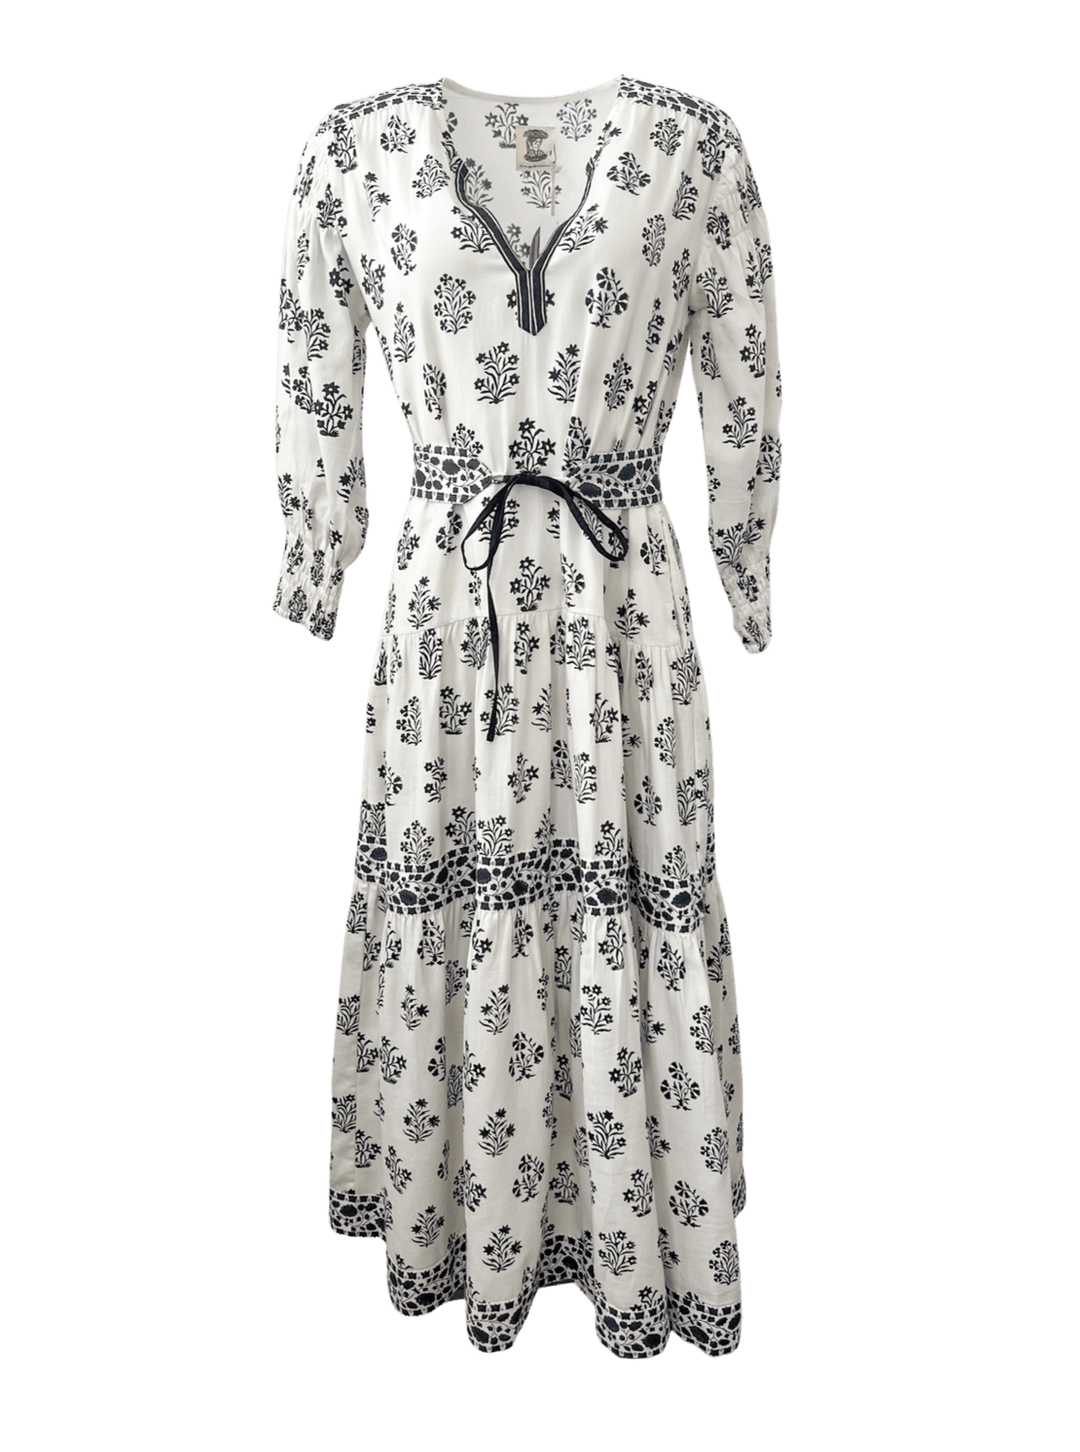 Daydress Dress Daydress | Eve Dress in White Mono Flower